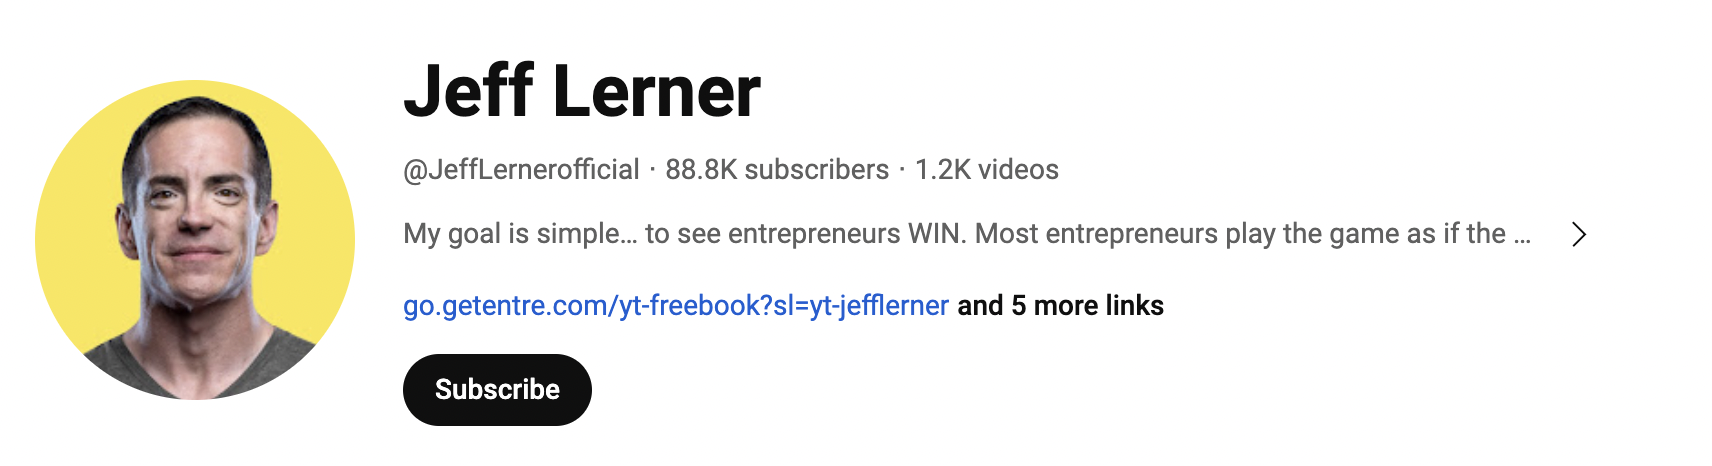 Jeff Lerner YouTube channel